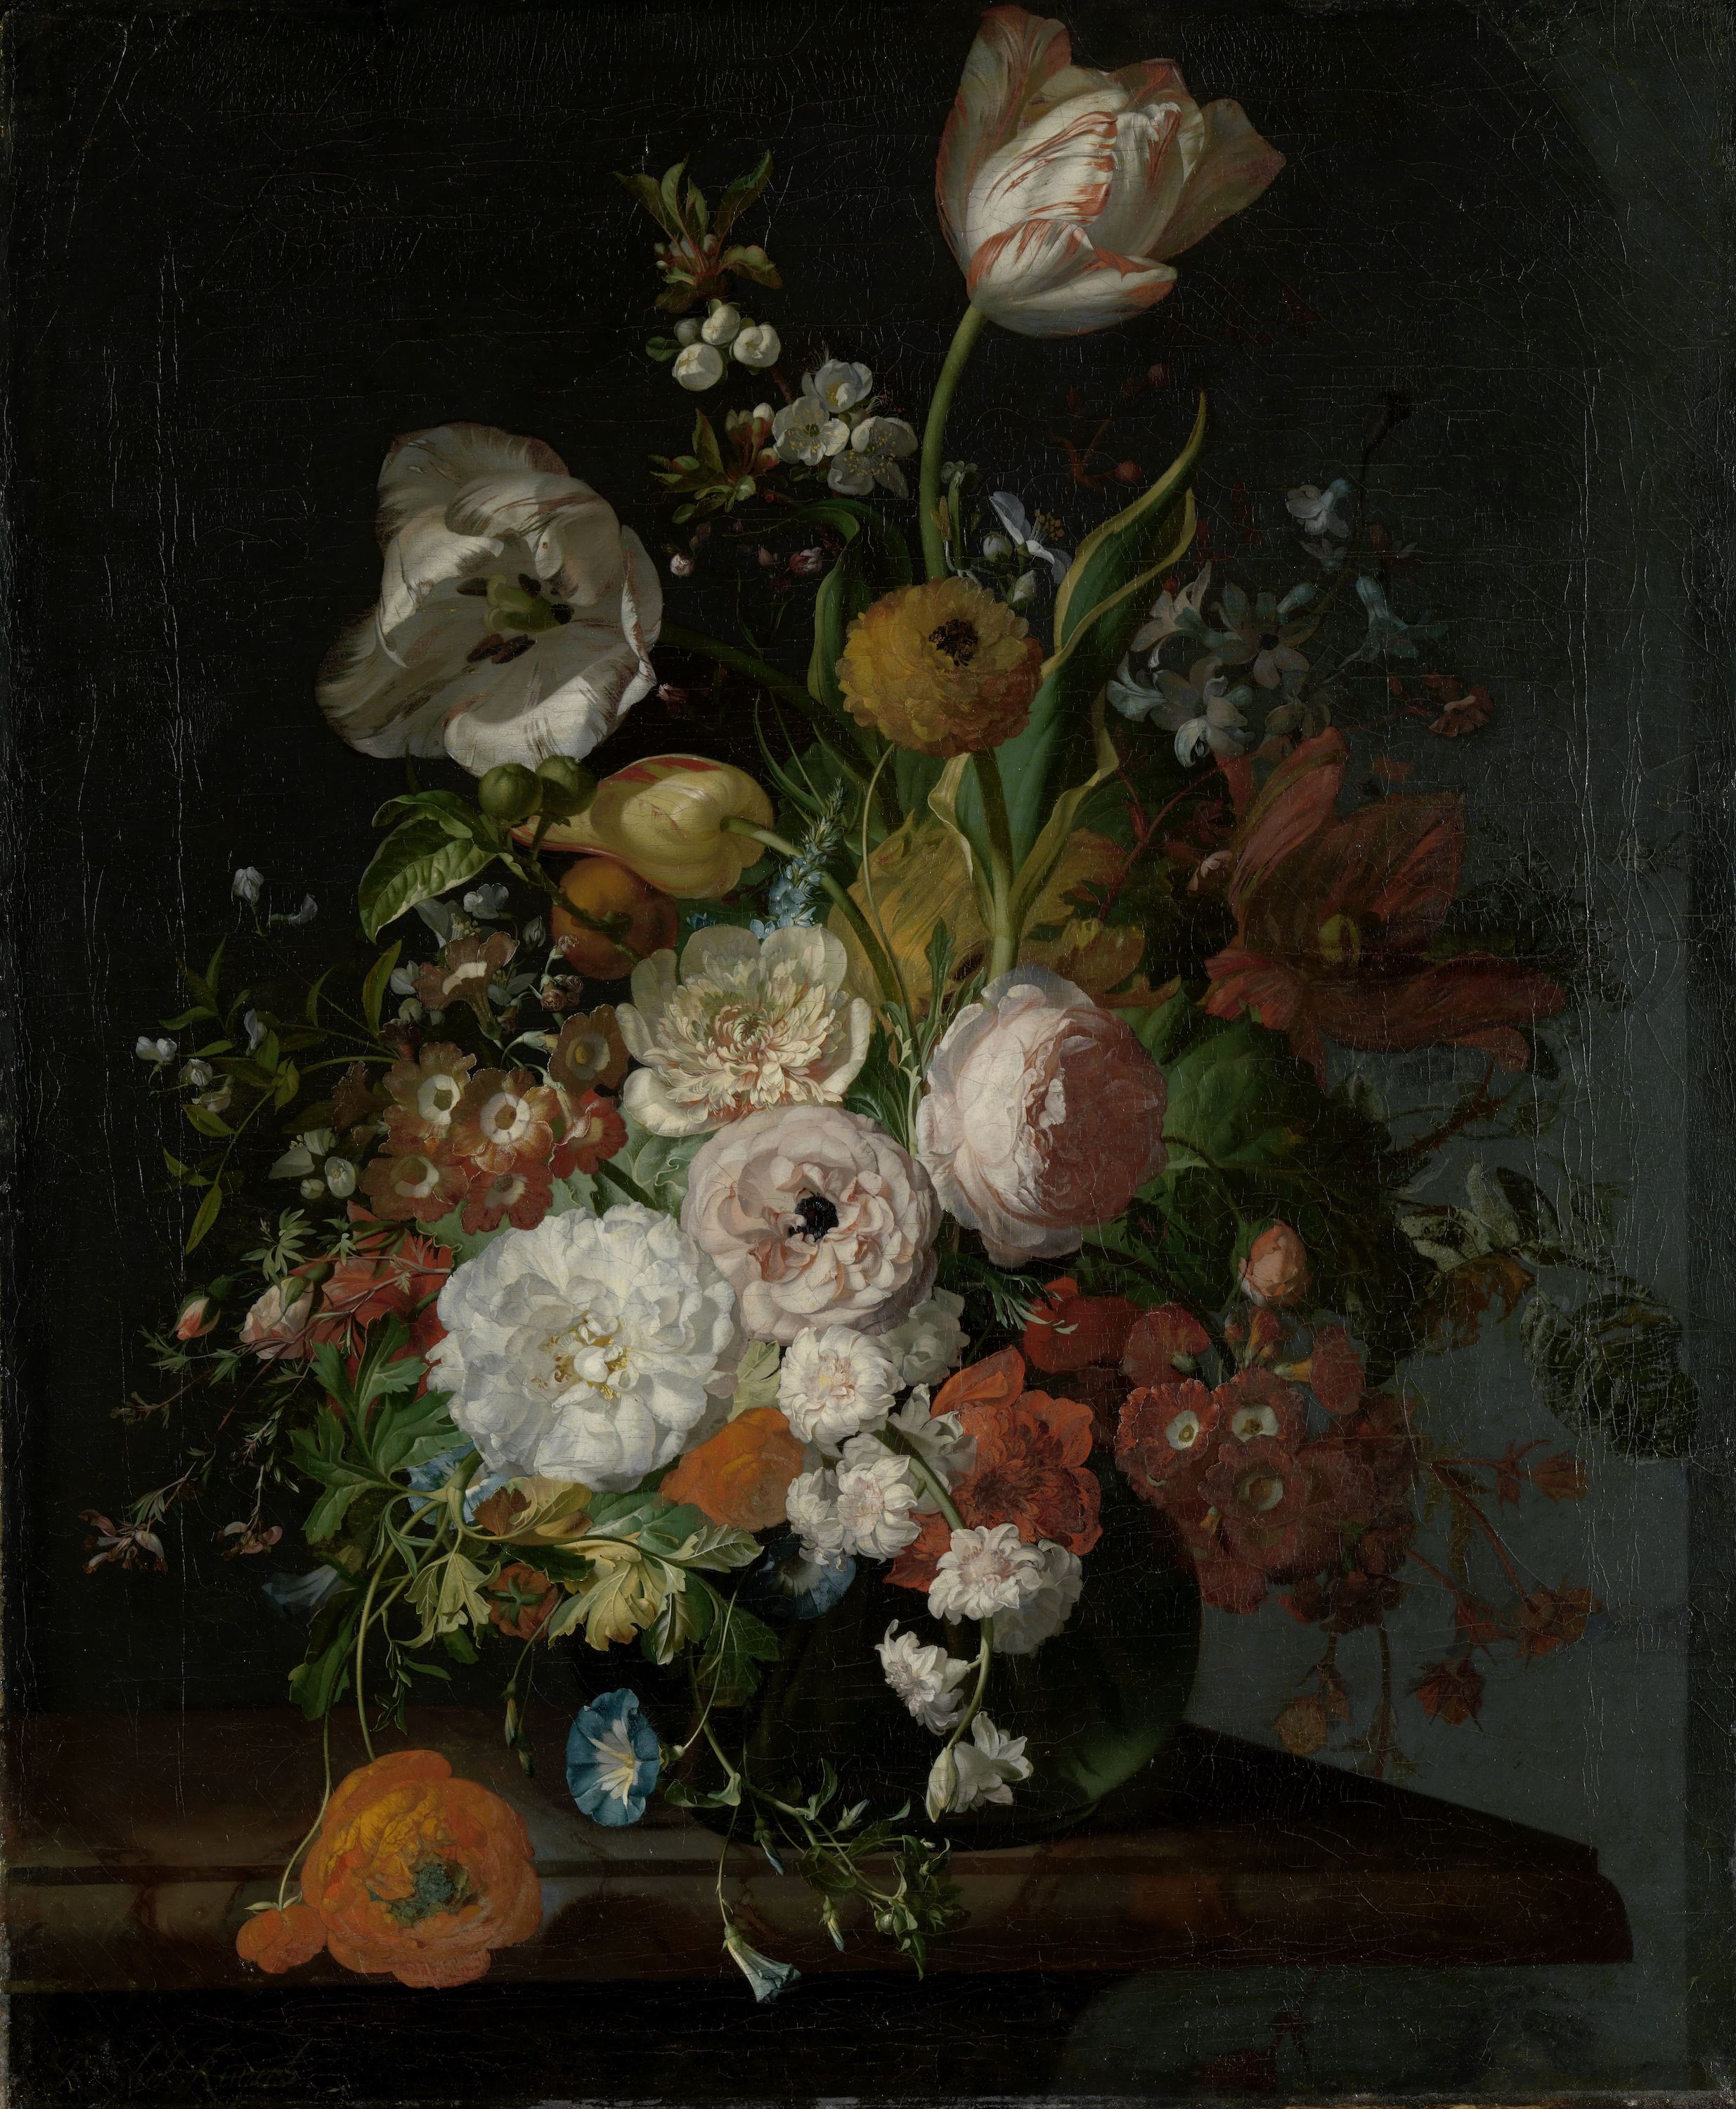 Bodegón con flores en un vaso de vidrio by Rachel Ruysch - c. 1690 - c. 1720 - 65 x 53,5 cm Rijksmuseum